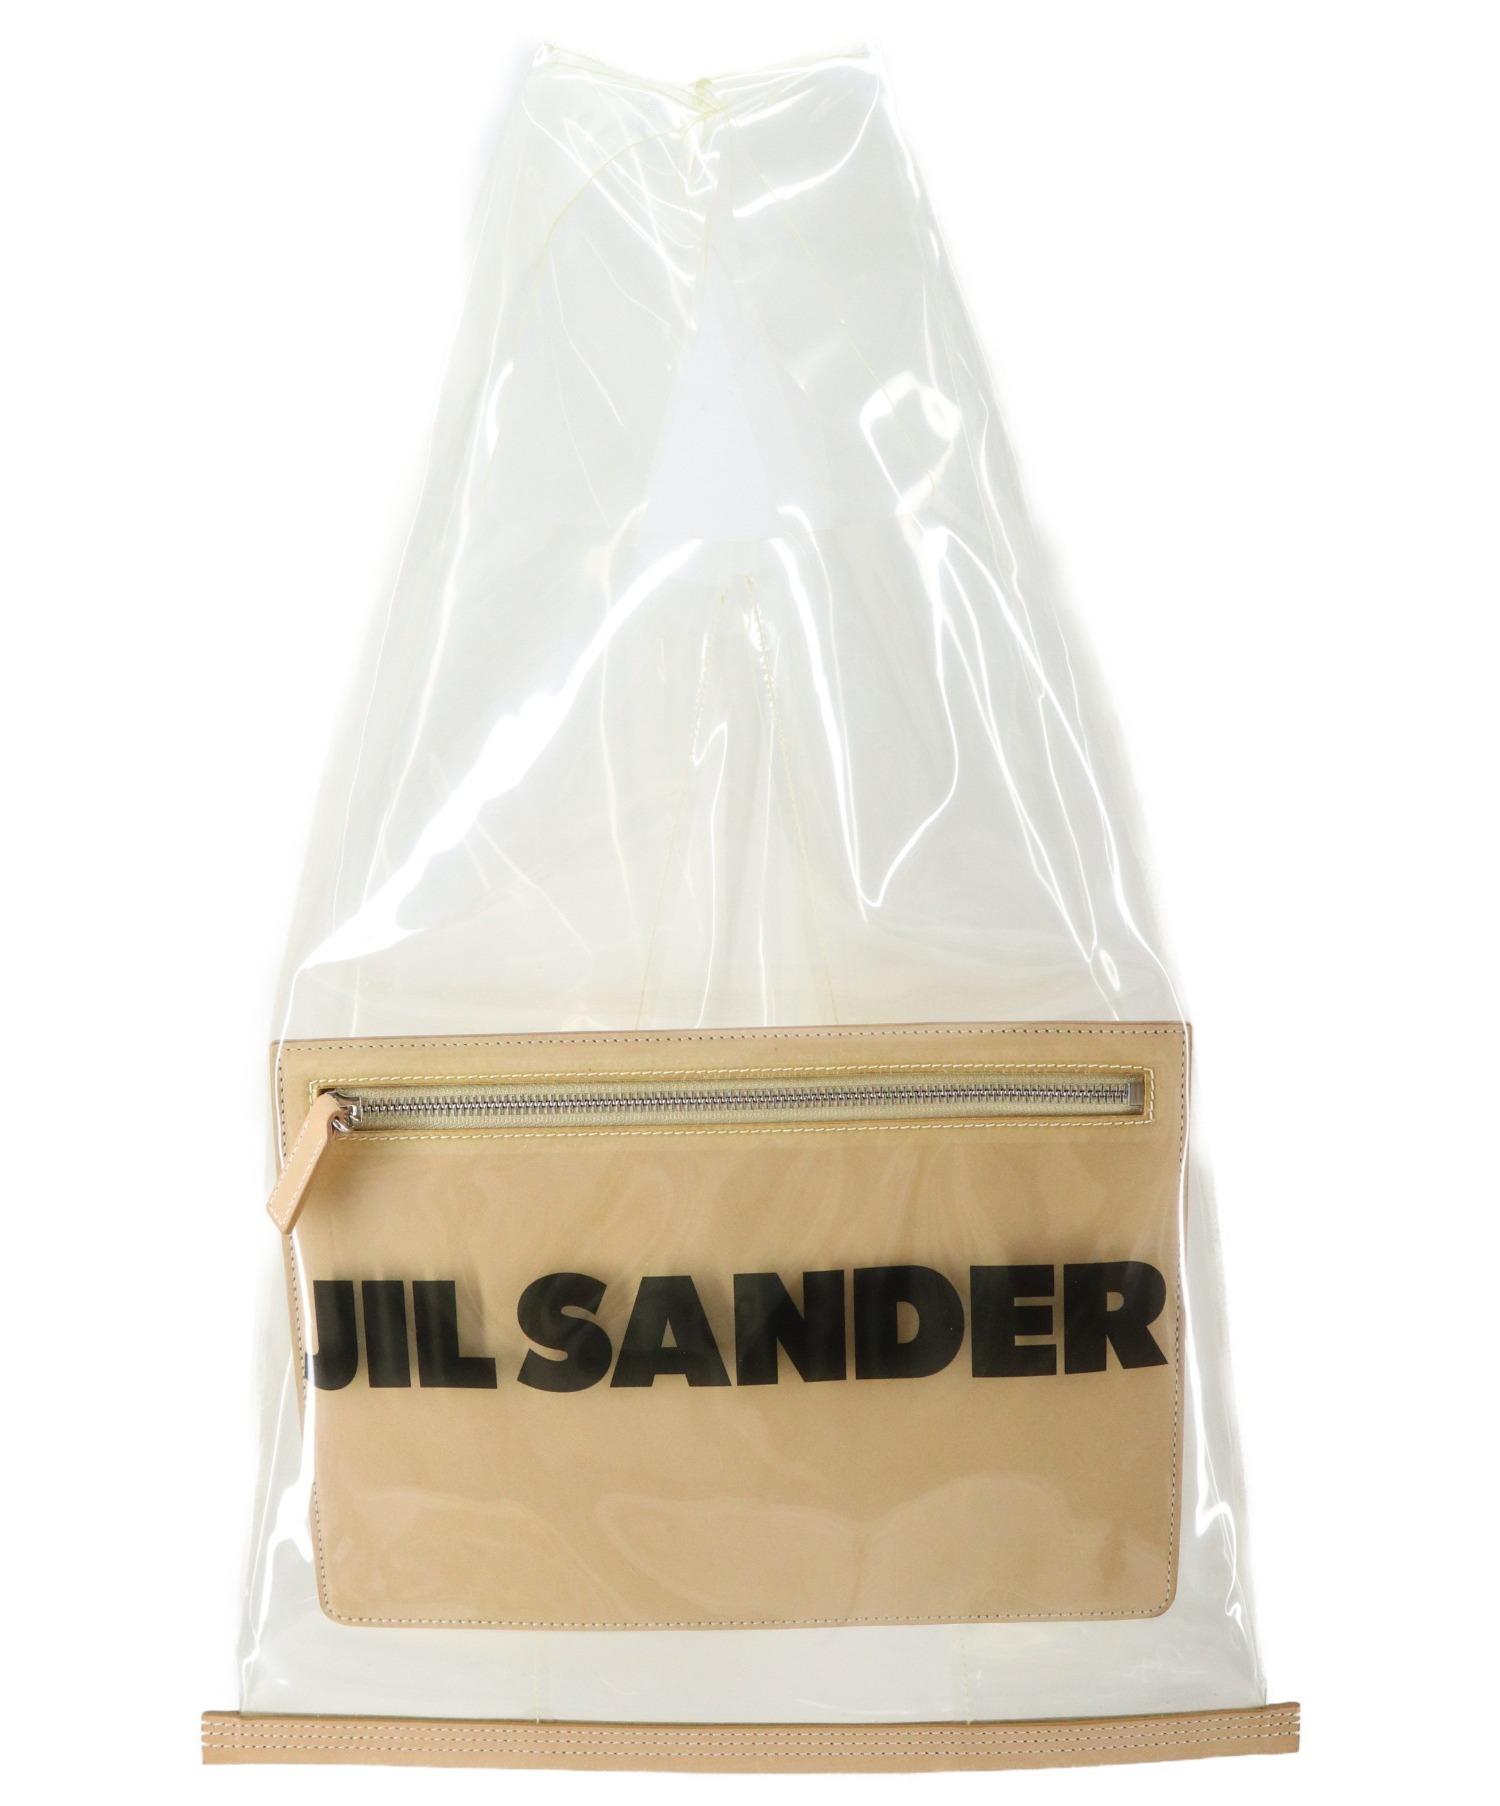 JIL SANDER (ジルサンダー) PVCレザーコンビトートバッグ ベージュ JSPO850290